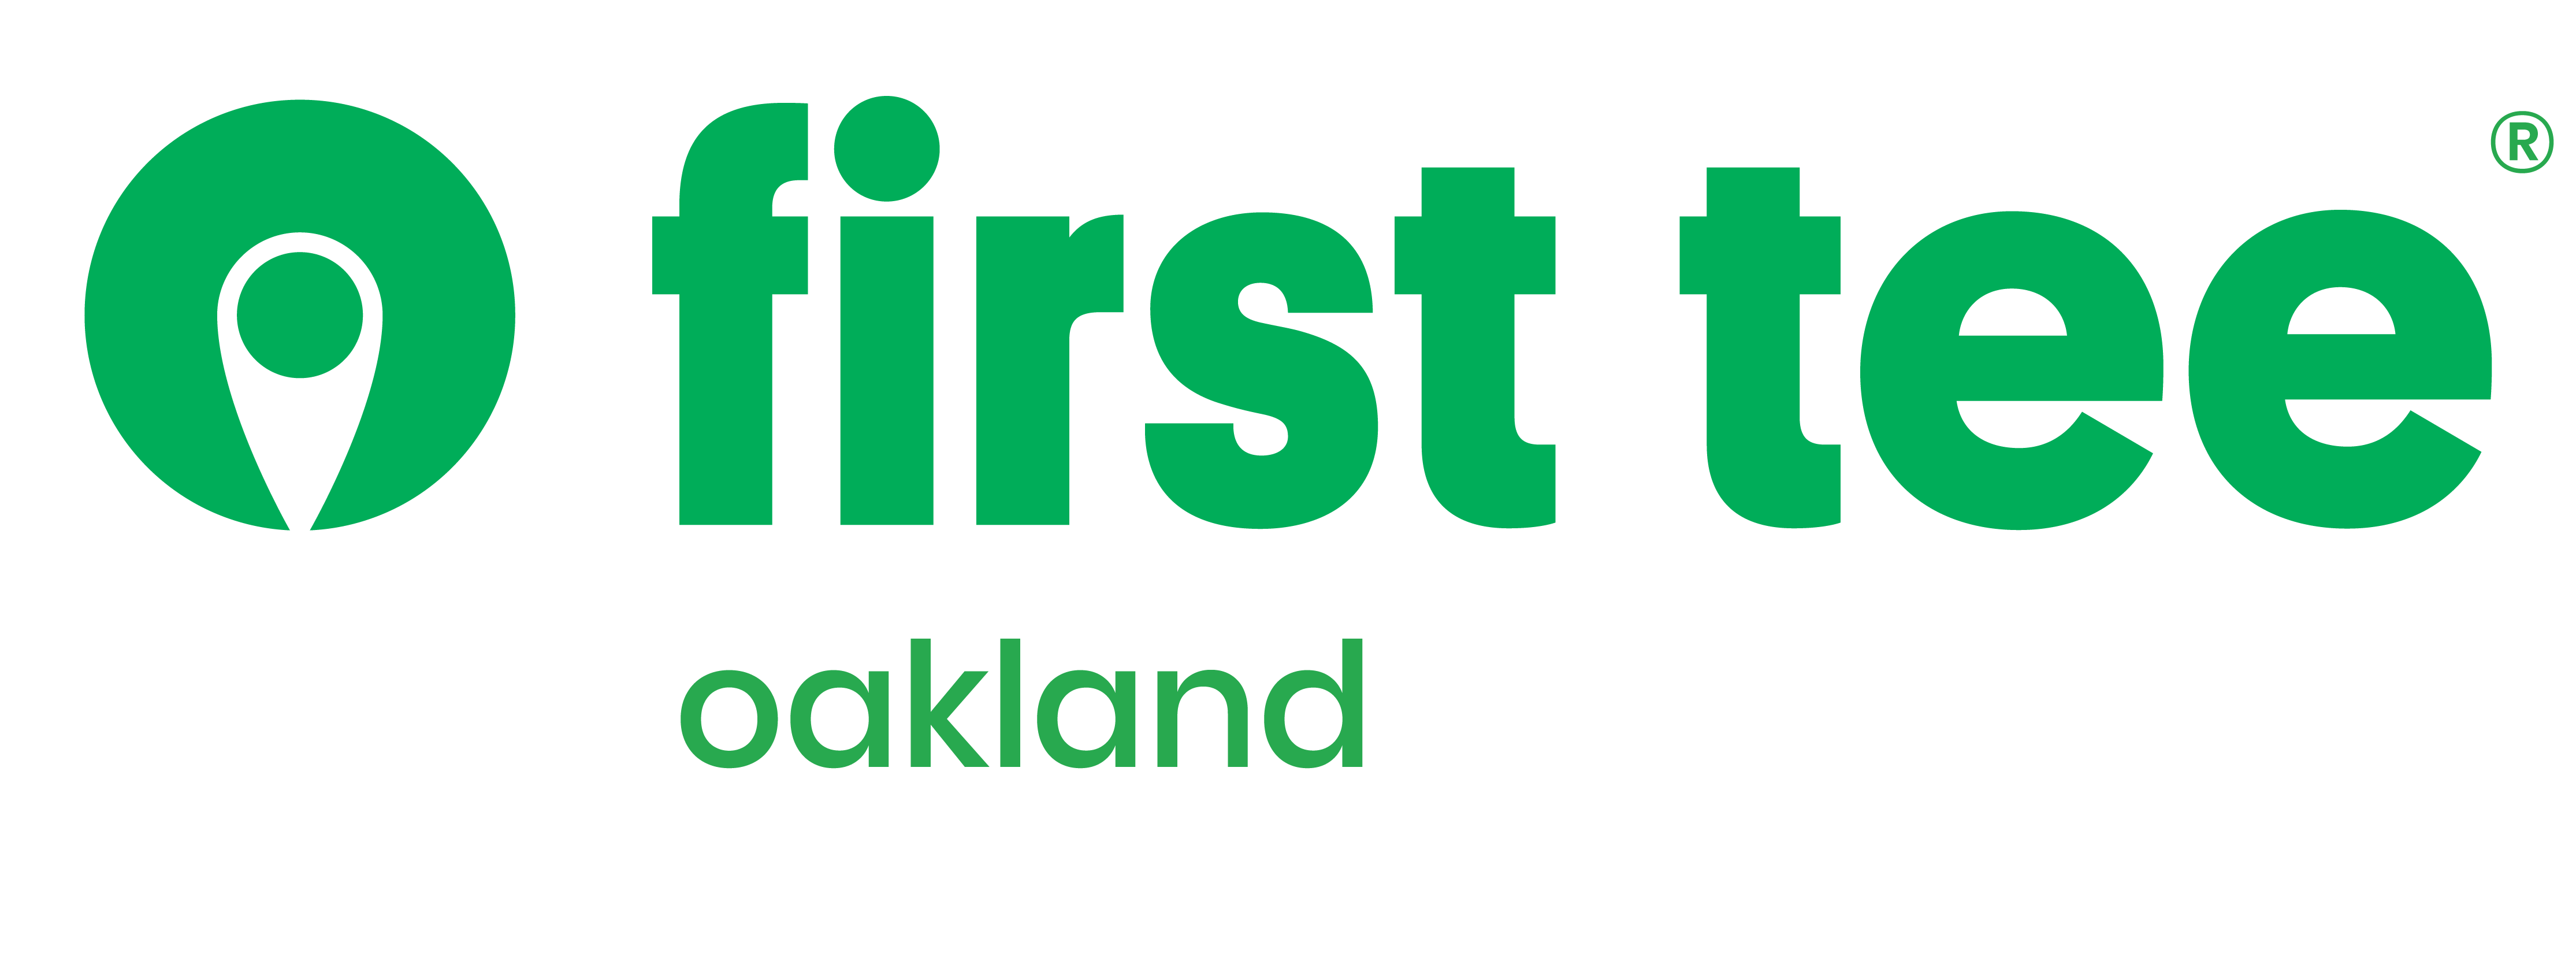 First Tee – Oakland